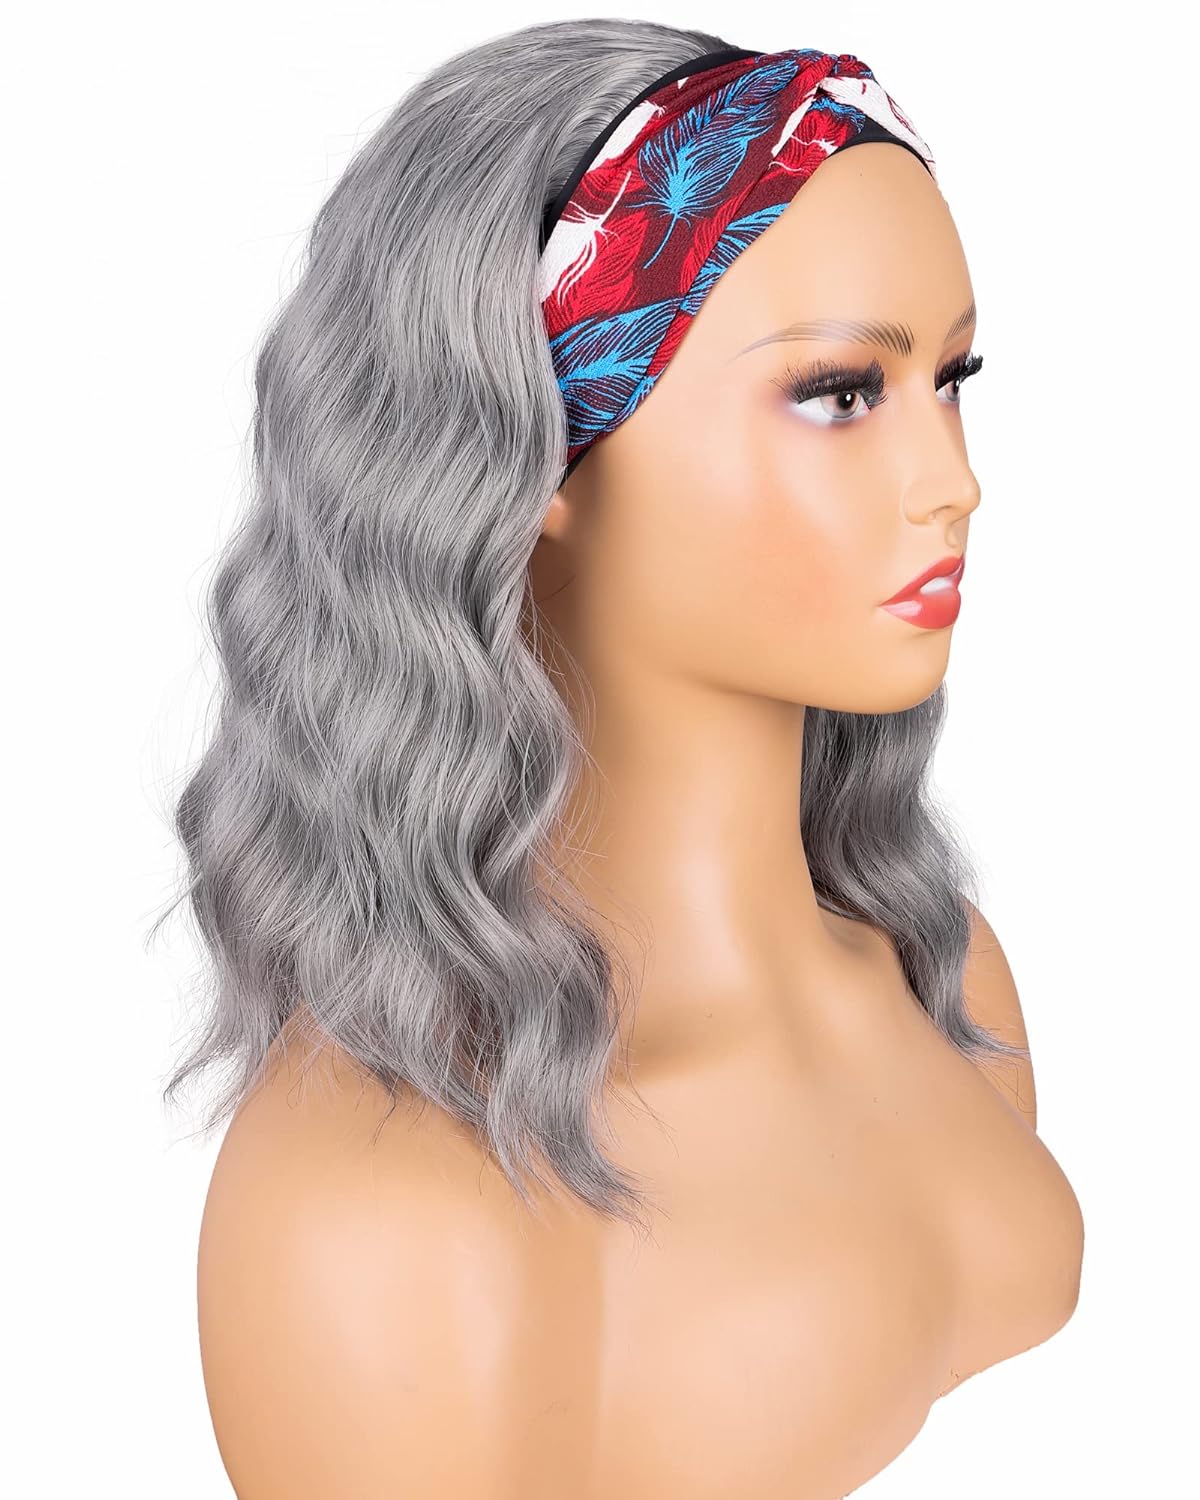 Silver Grey Wavy Headband Wig. Synthetic Wrap Wigs